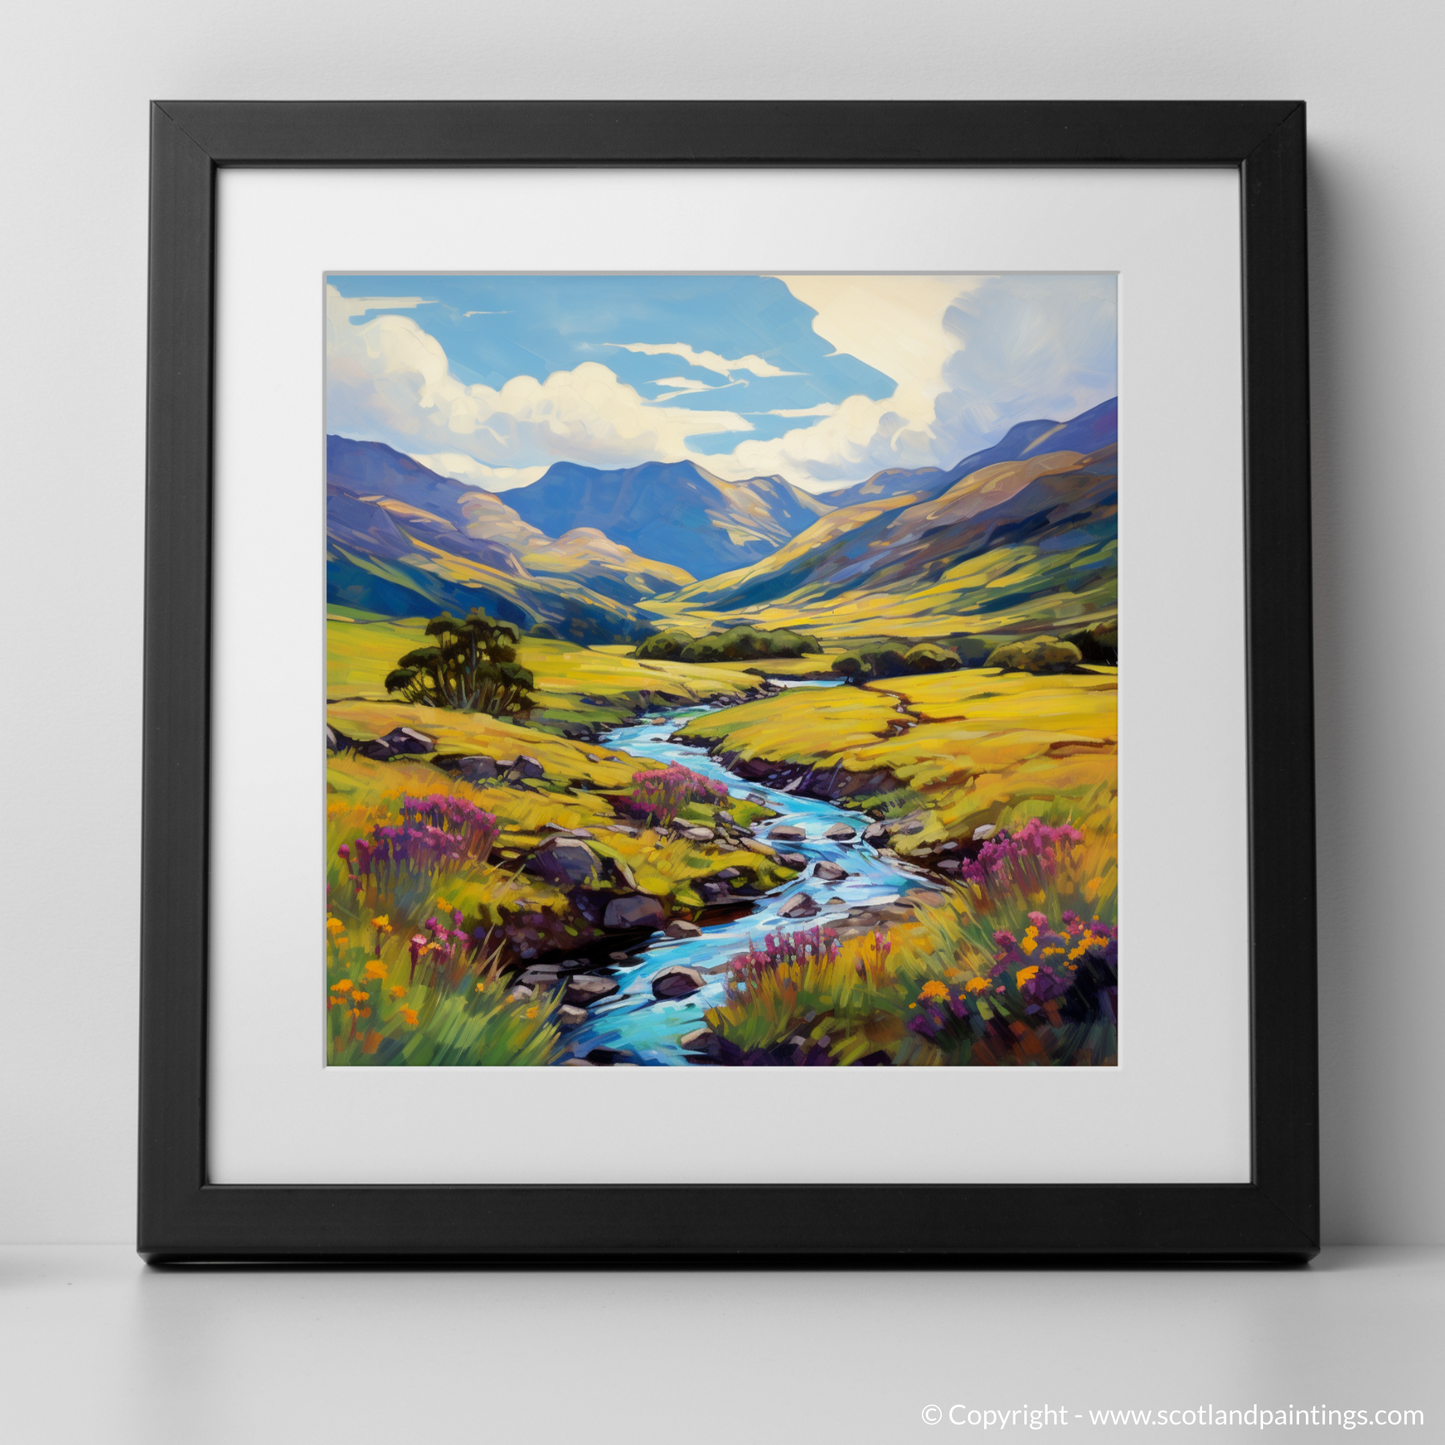 Art Print of Glen Shiel, Highlands in summer with a black frame